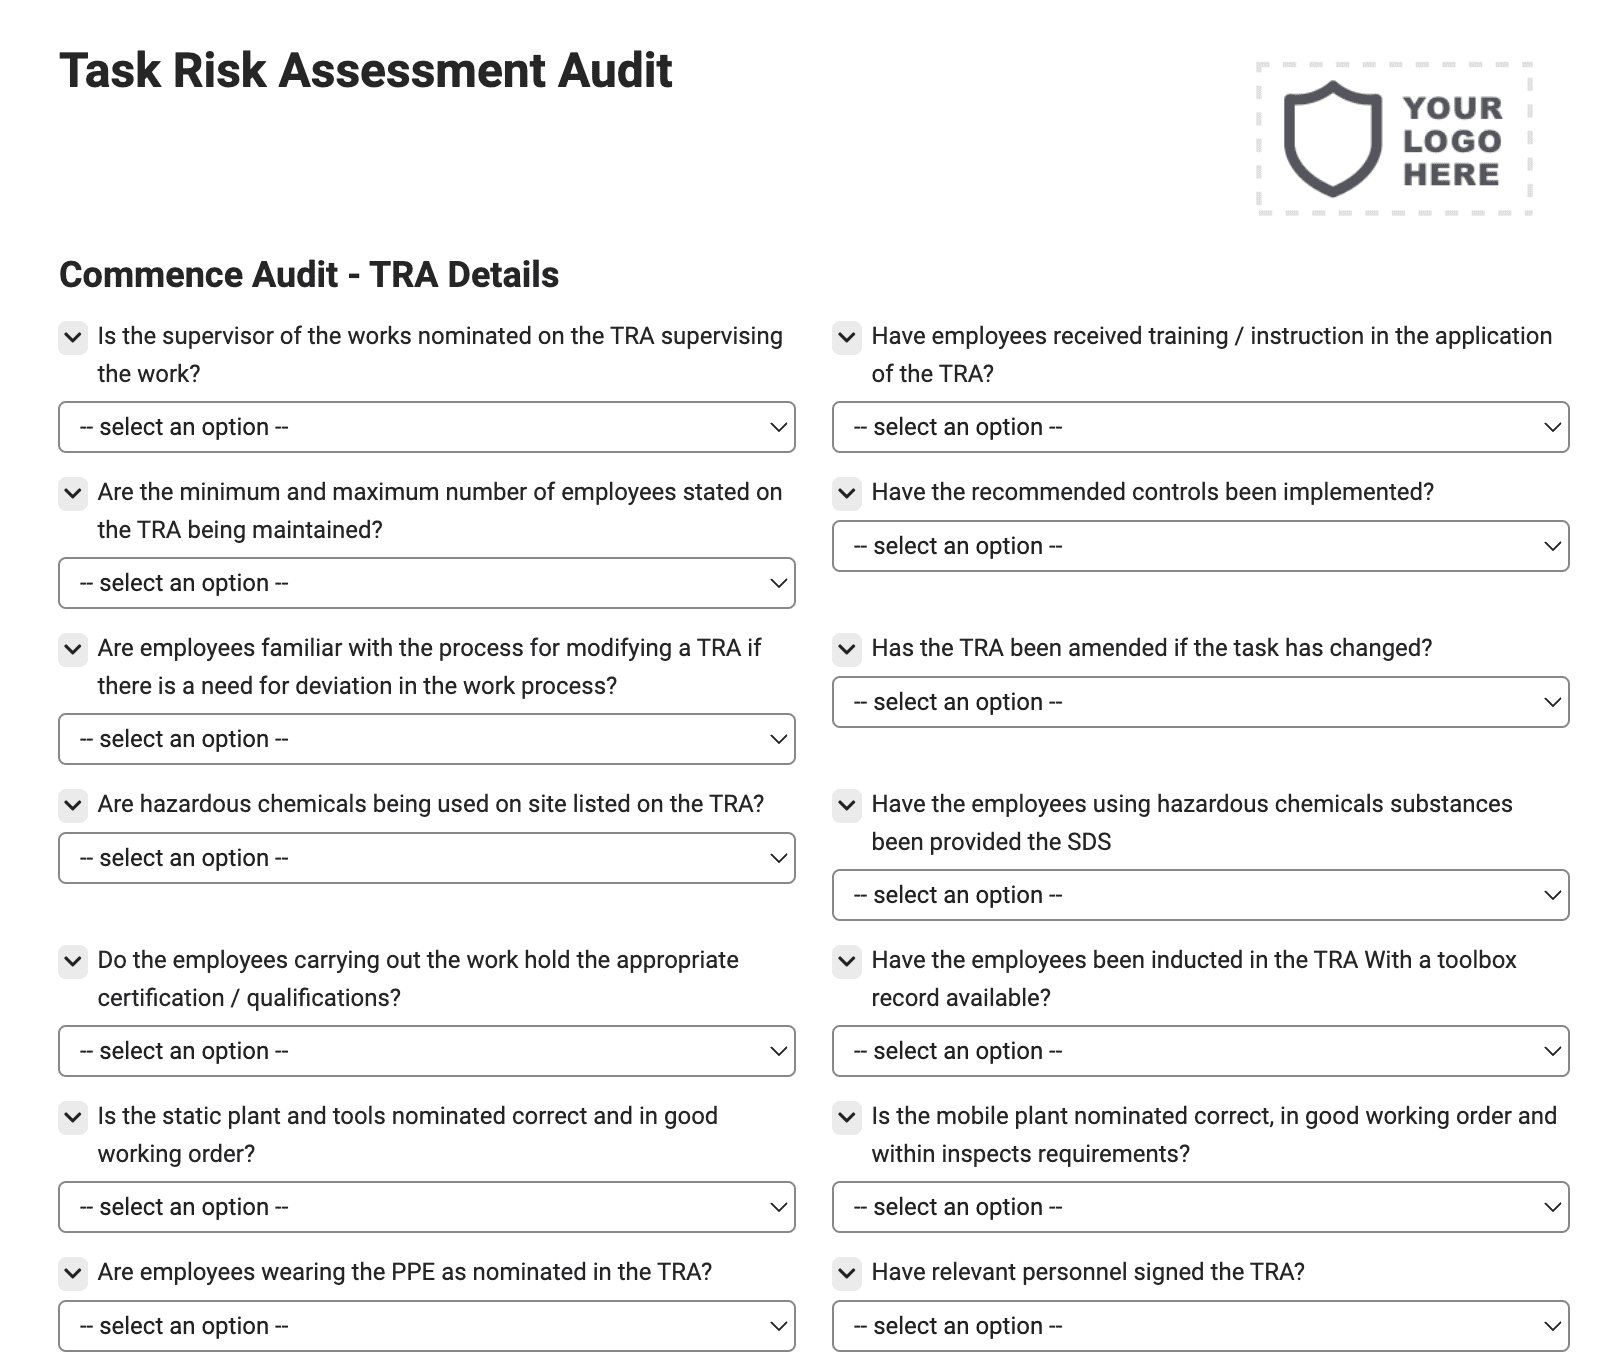 Task Risk Assessment Audit